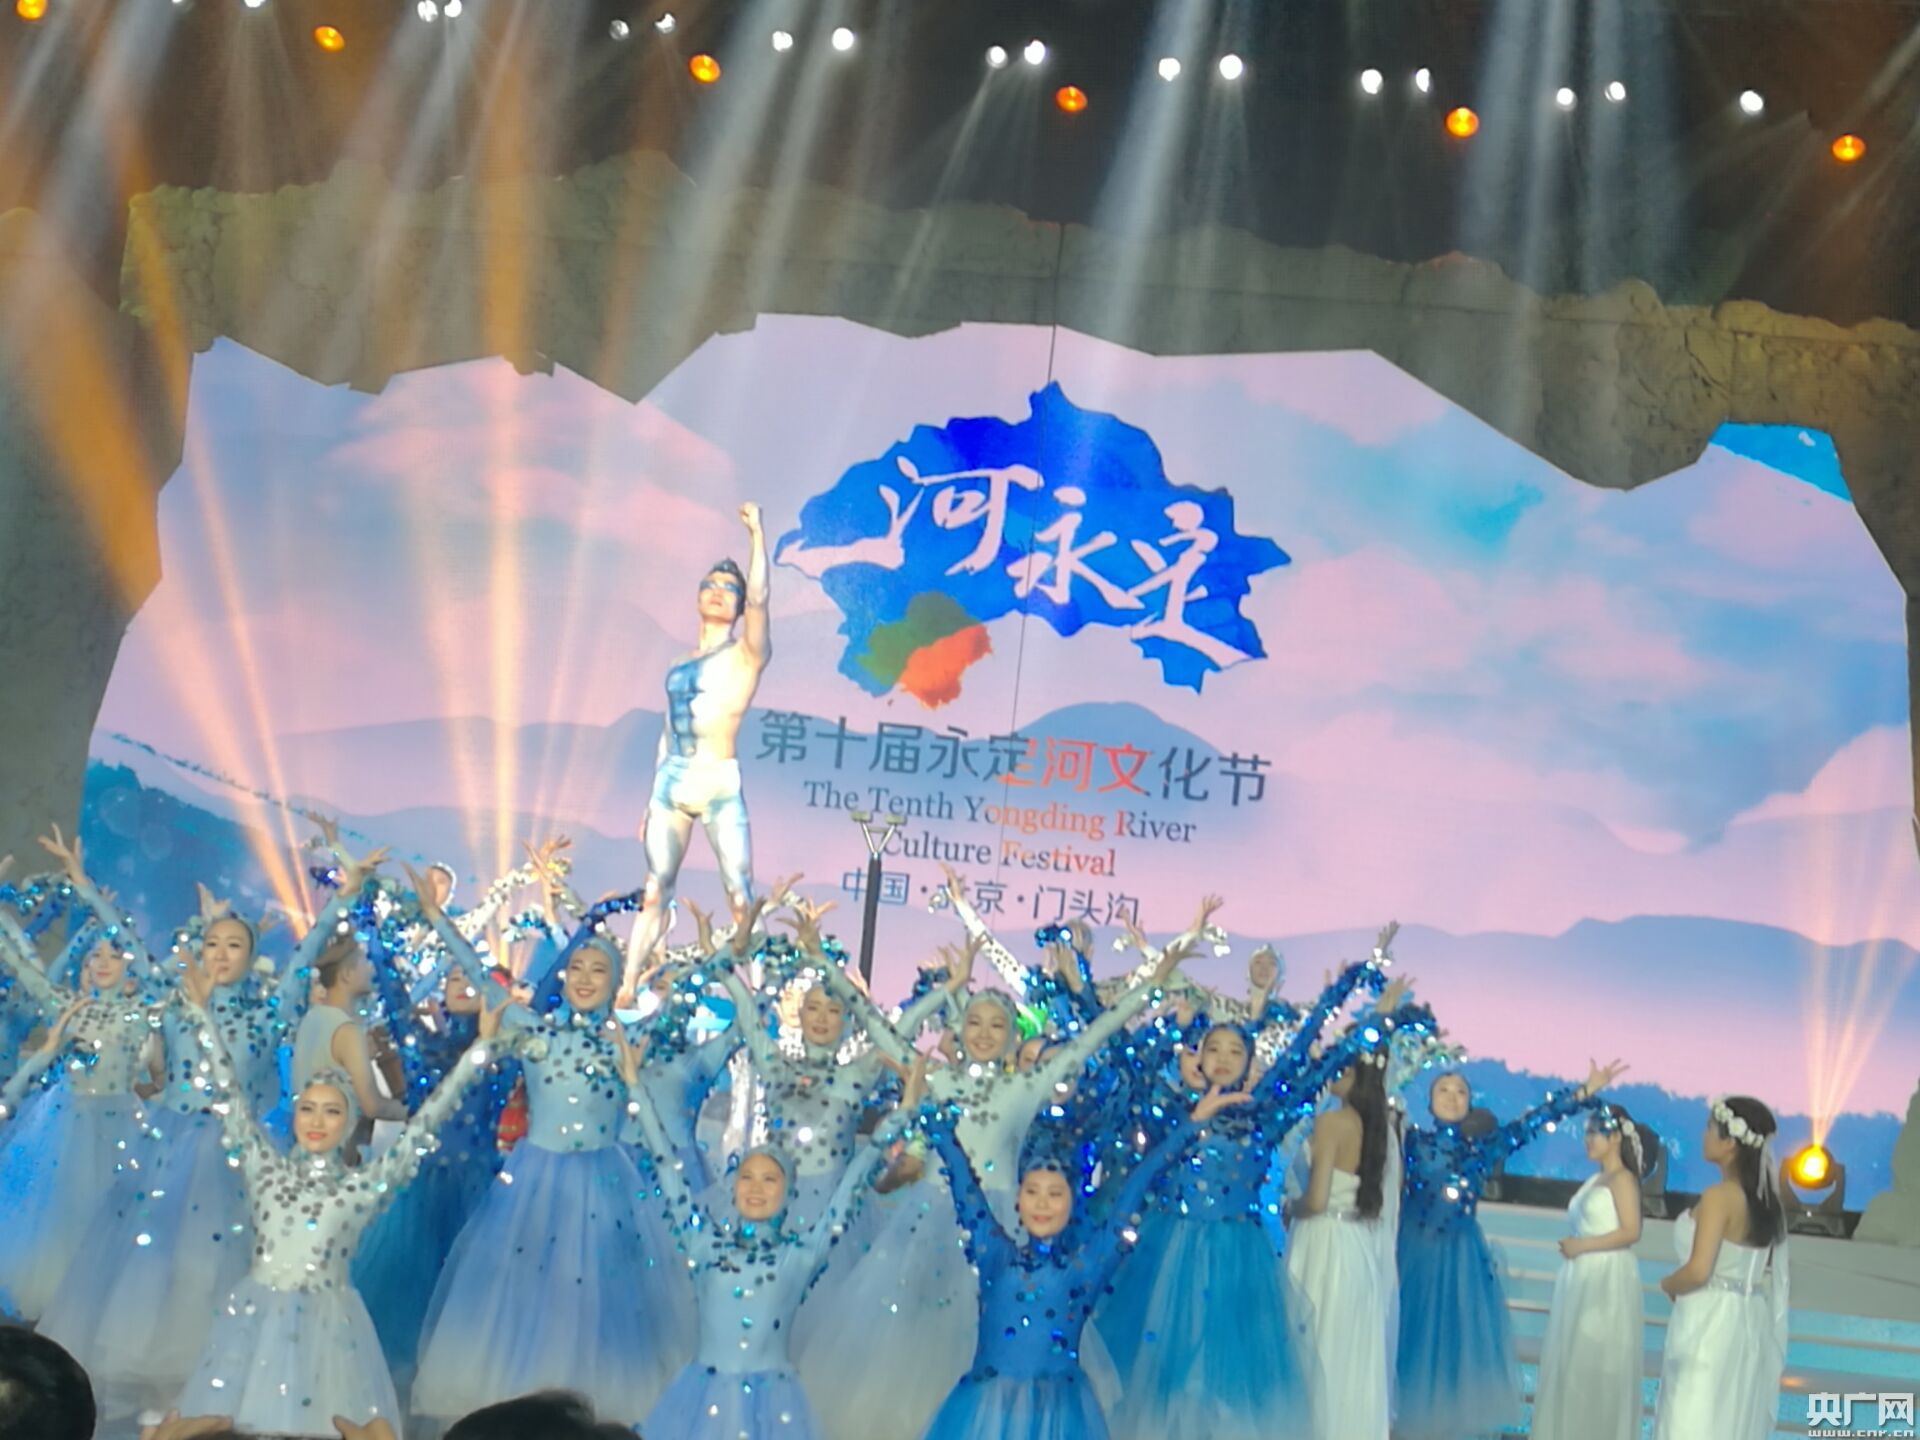 第十届中国北京永定河文化节18日在京开幕